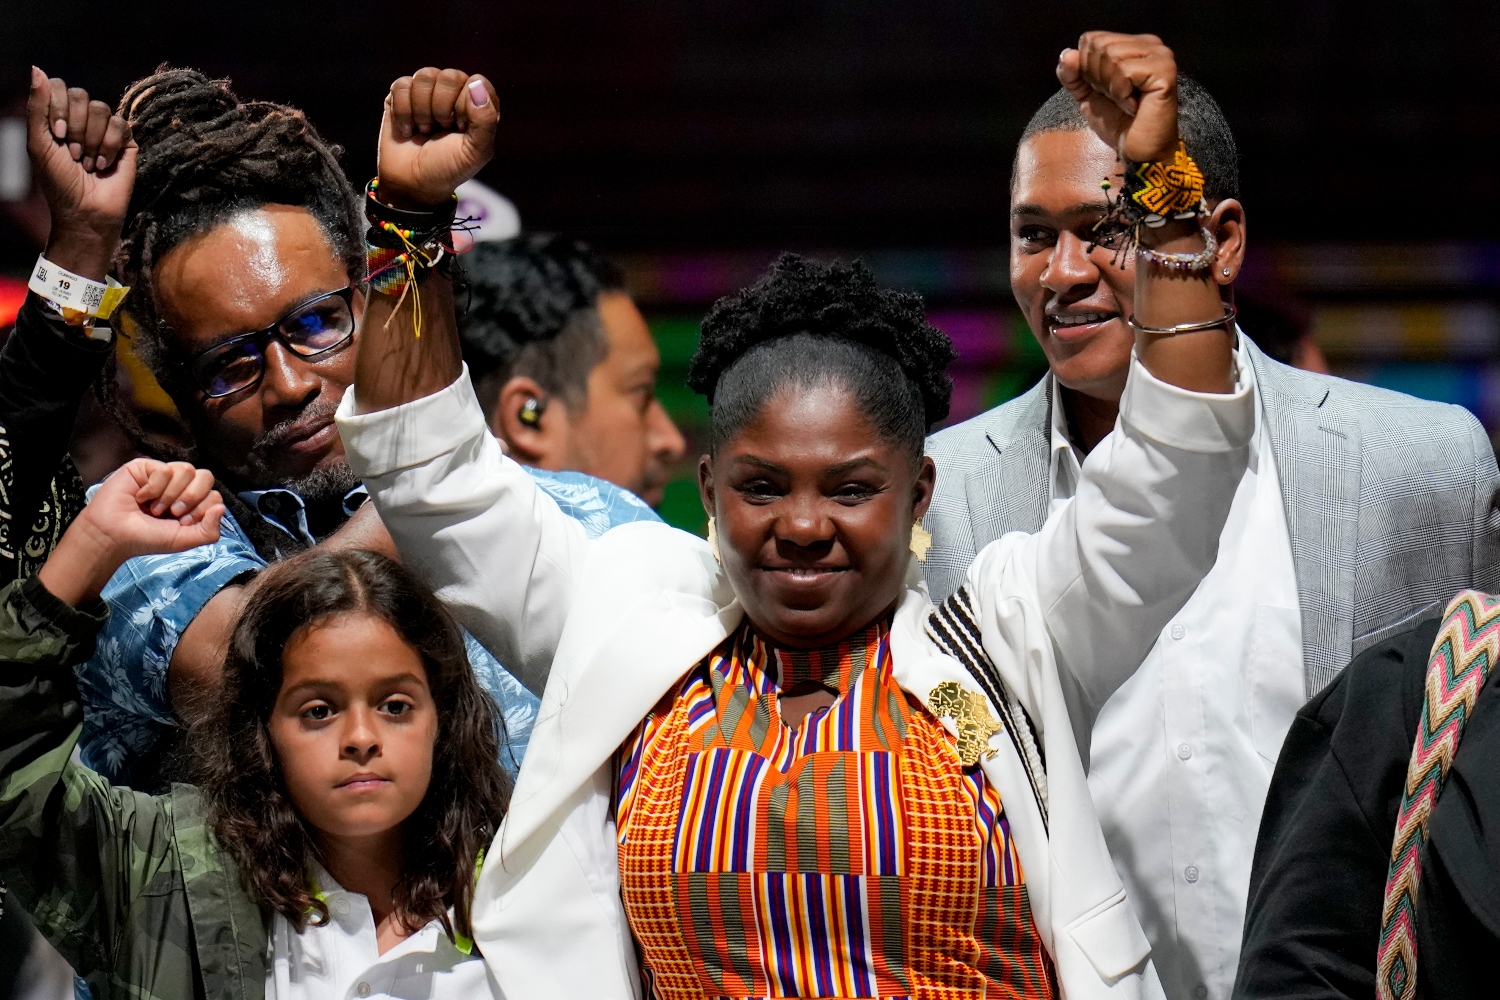 Φράντσα Μάρκες: Φεμινίστρια, ακτιβίστρια και μόνη μητέρα, η νέα αντιπρόεδρος της Κολομβίας